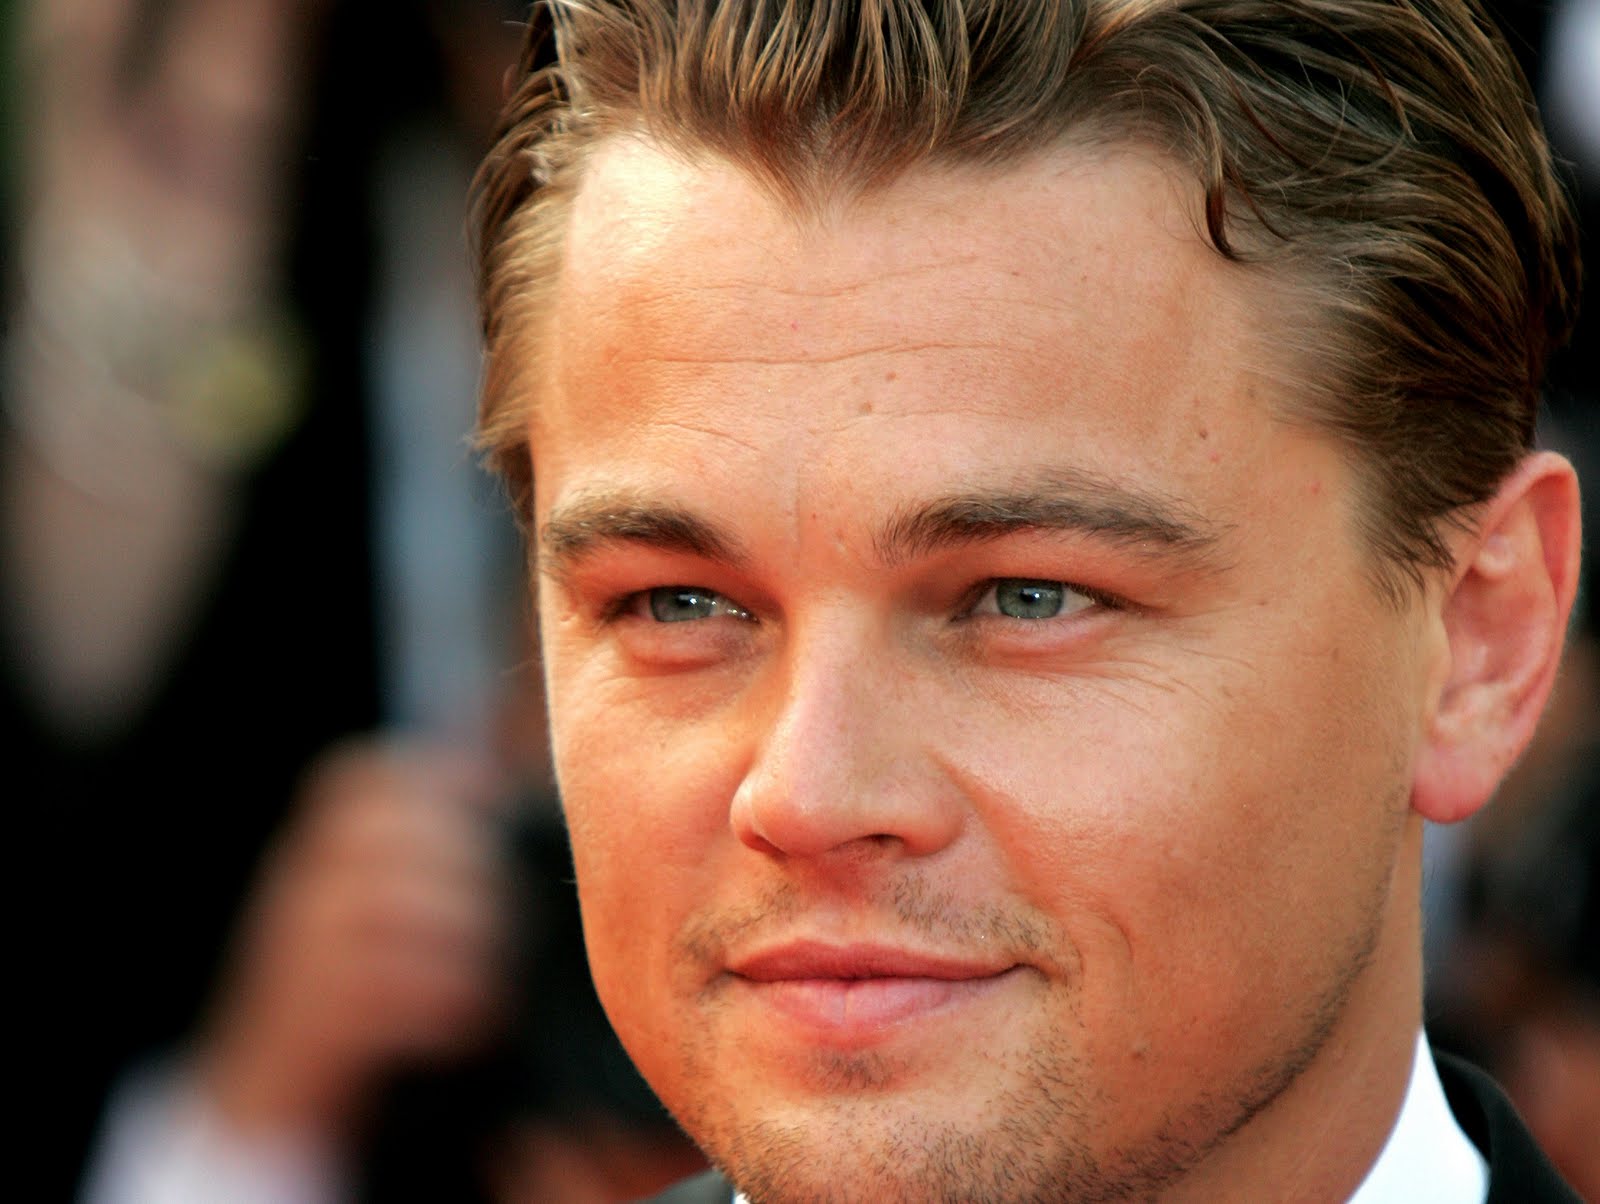 Leonardo DiCaprio Wallpaper - High Definition, High Resolution HD Wallpapers  : High Definition, High Resolution HD Wallpapers